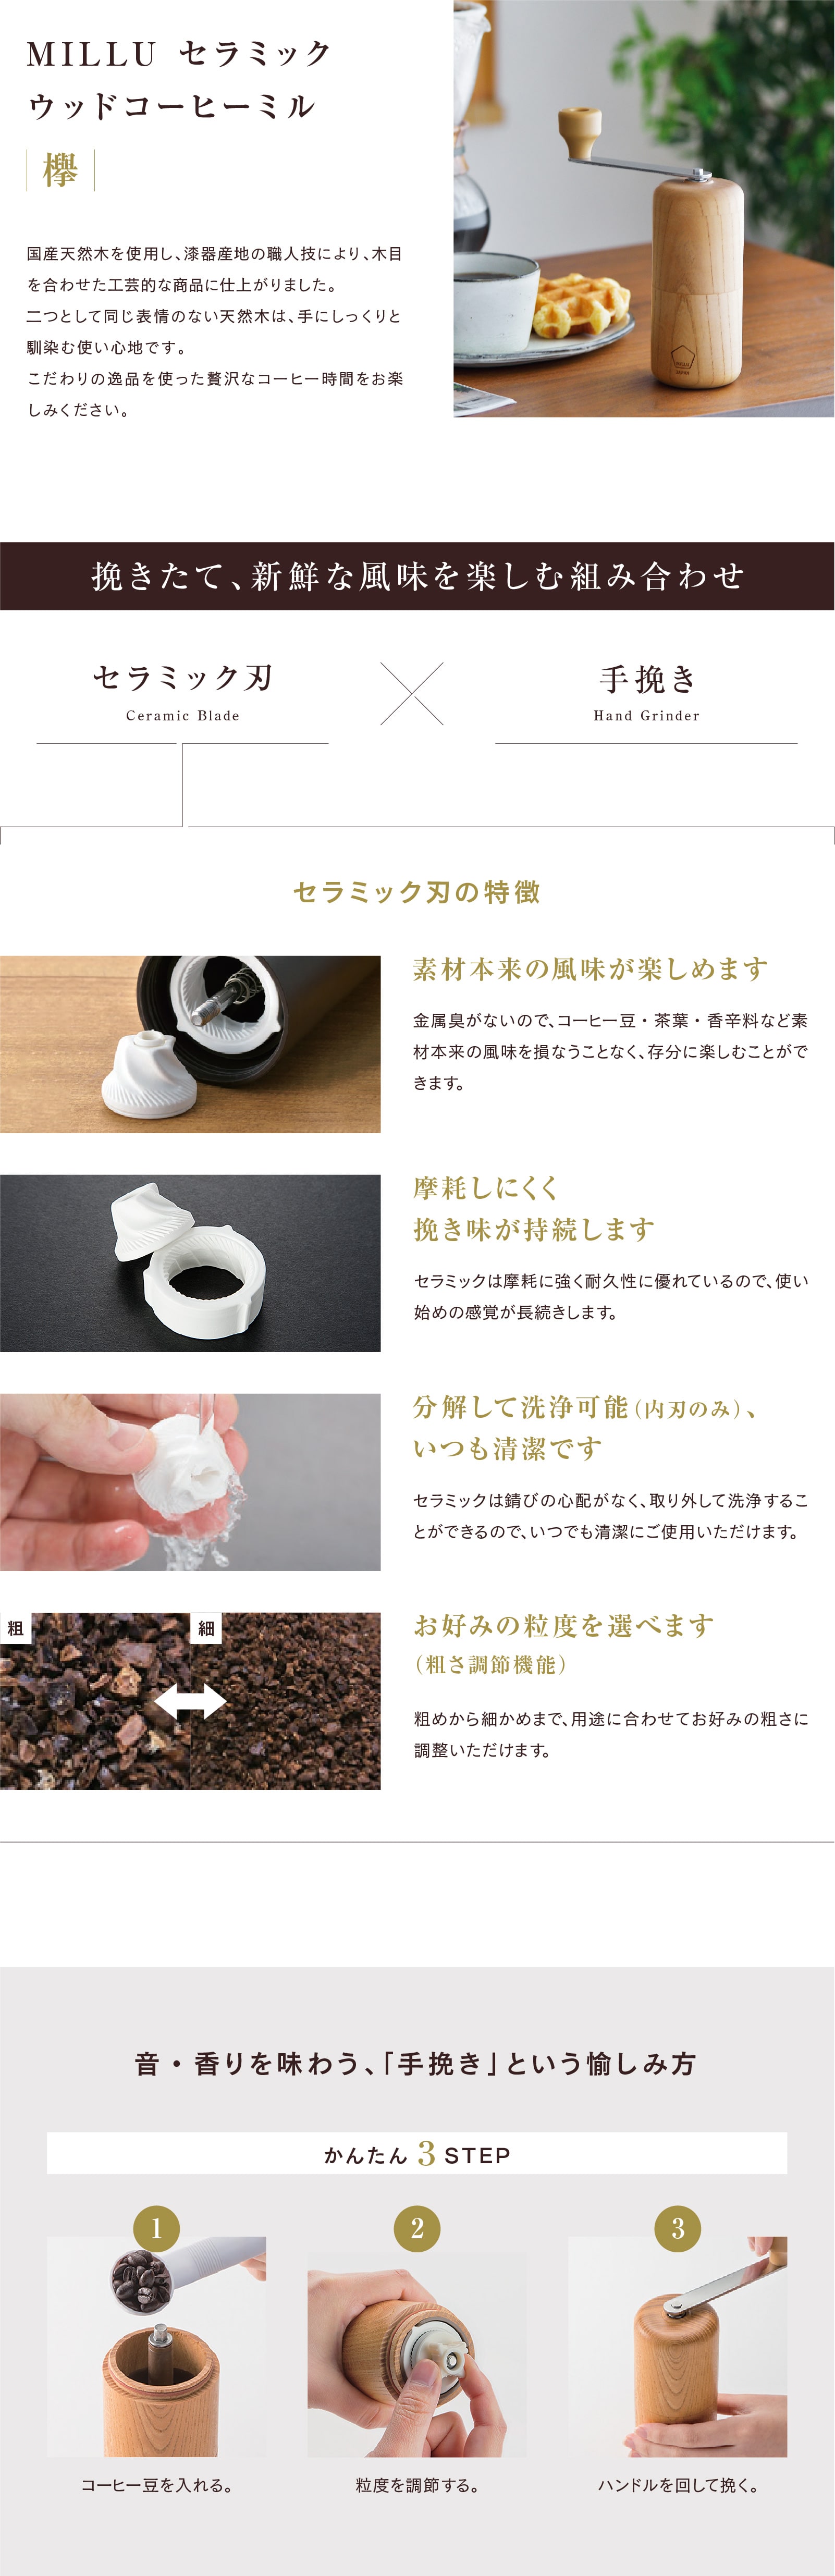 織り柄チェック 川崎合成樹脂 MILLU 手挽きコーヒーミル ウッド 欅(KEYAKI) MI-008